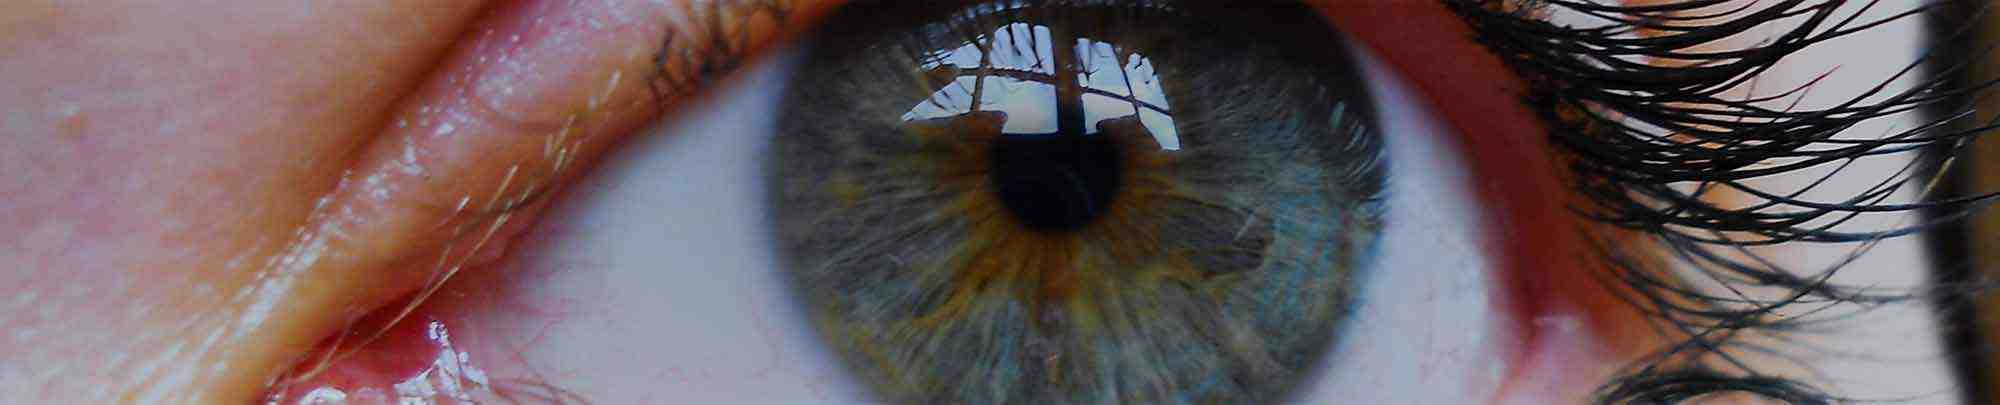 Zbliżenie na błękitne kobiece oko